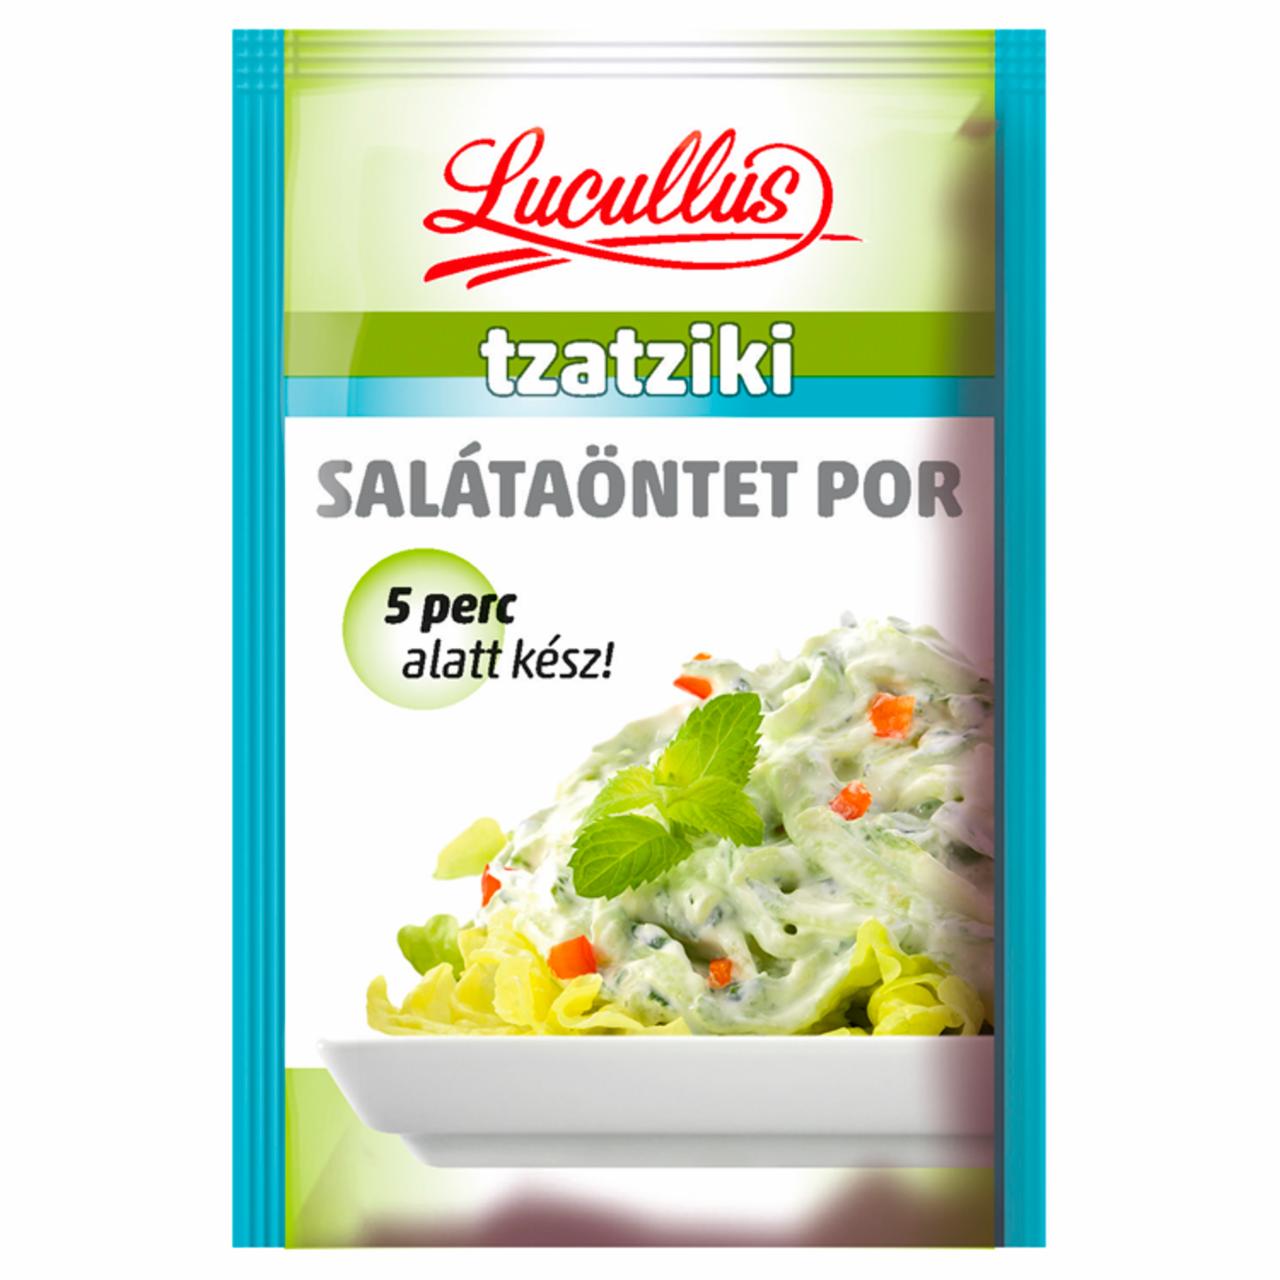 Képek - Lucullus tzatziki salátaöntet por 12 g